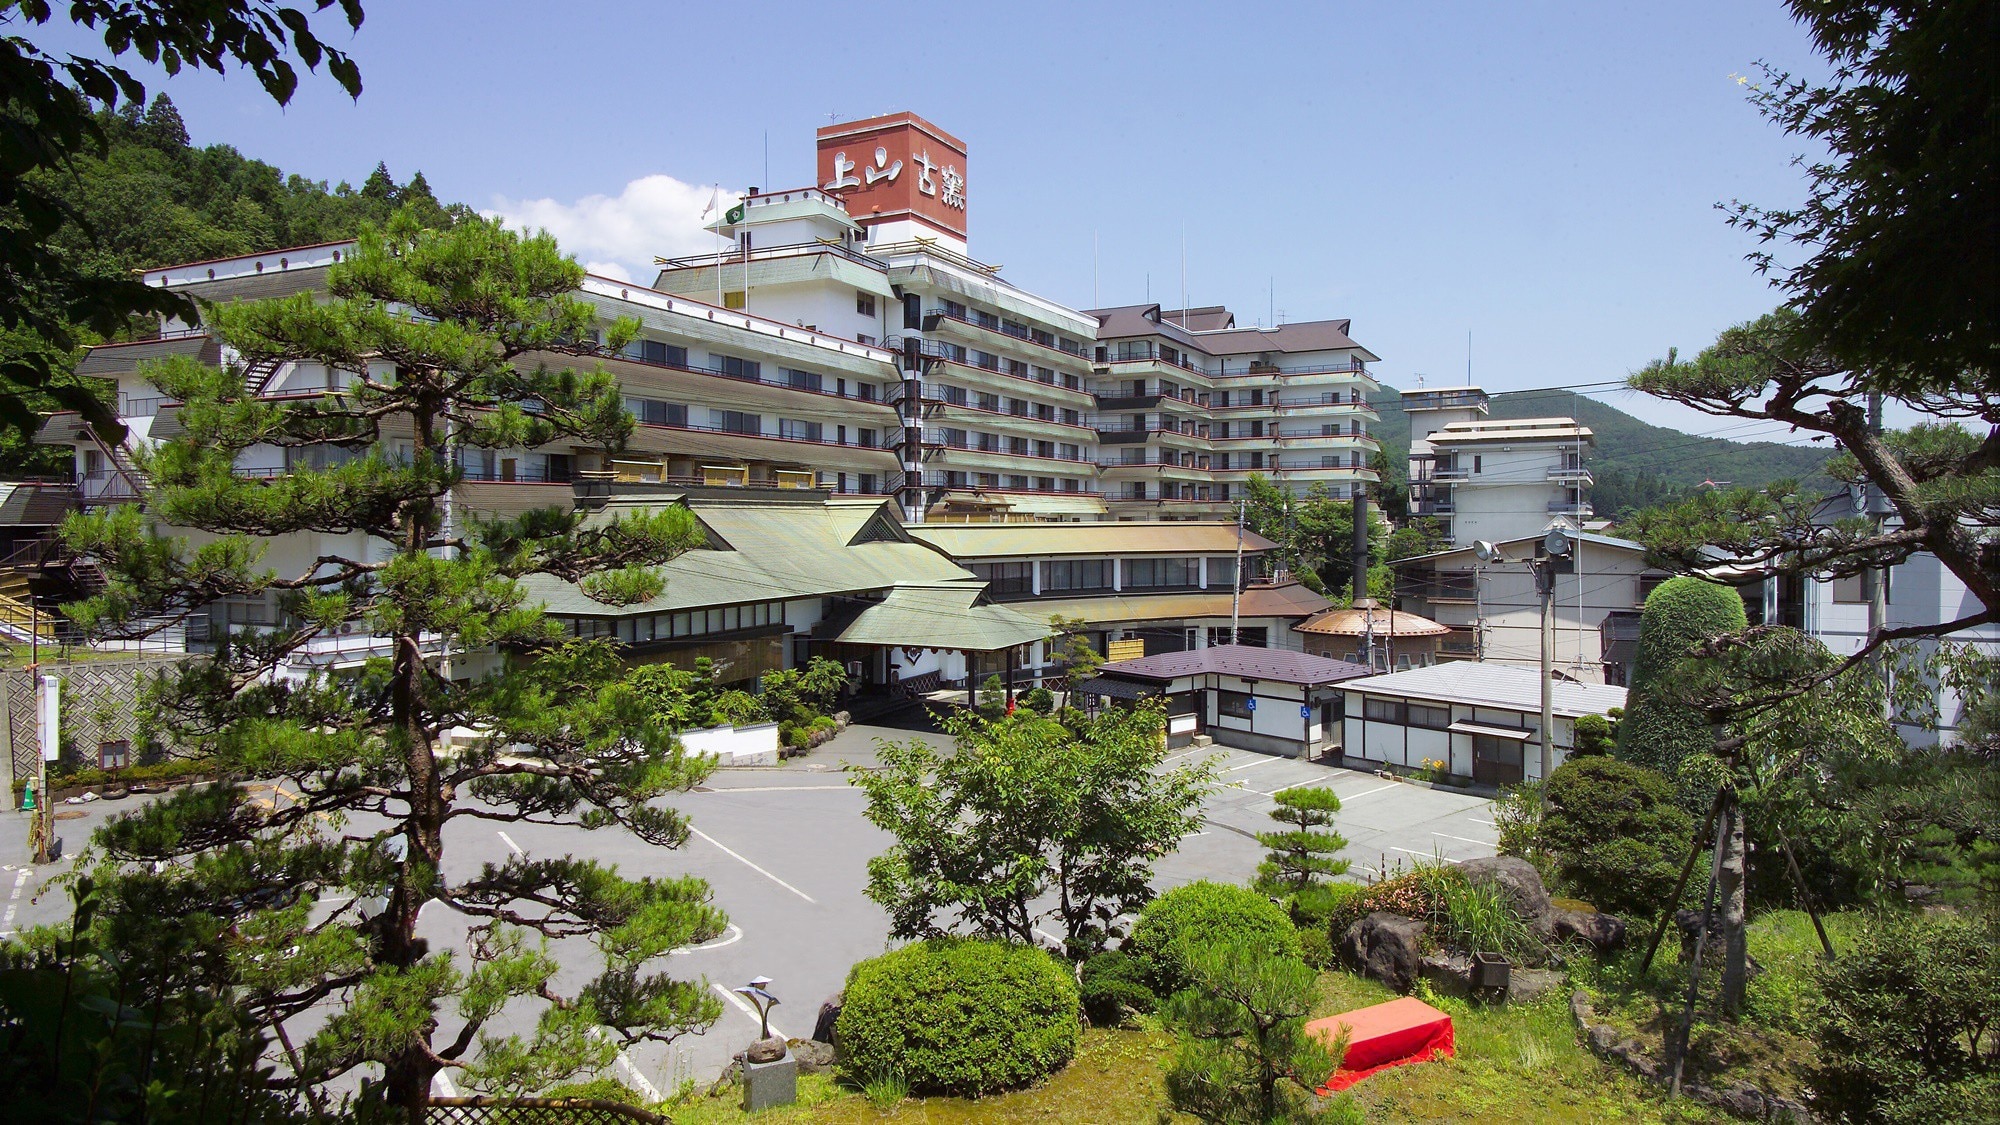 【外观】山形县上山地区是拥有555年以上历史的温泉村。酒店始建于 1951 年。